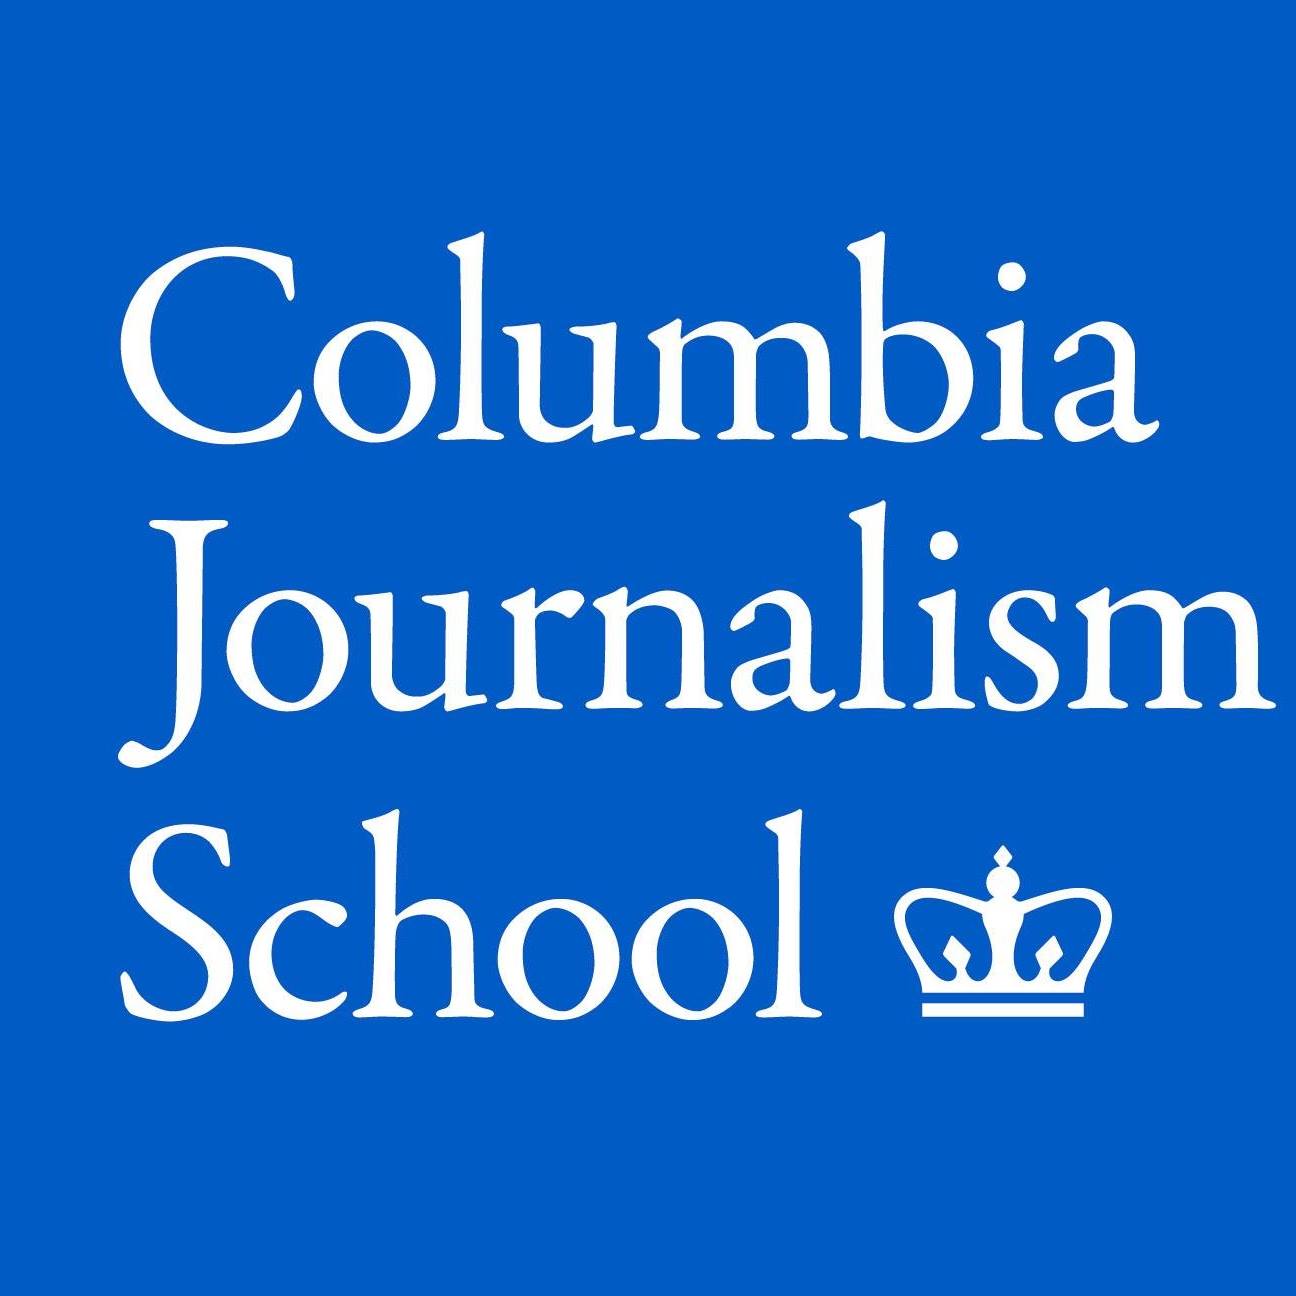 Columbia School of Journalism